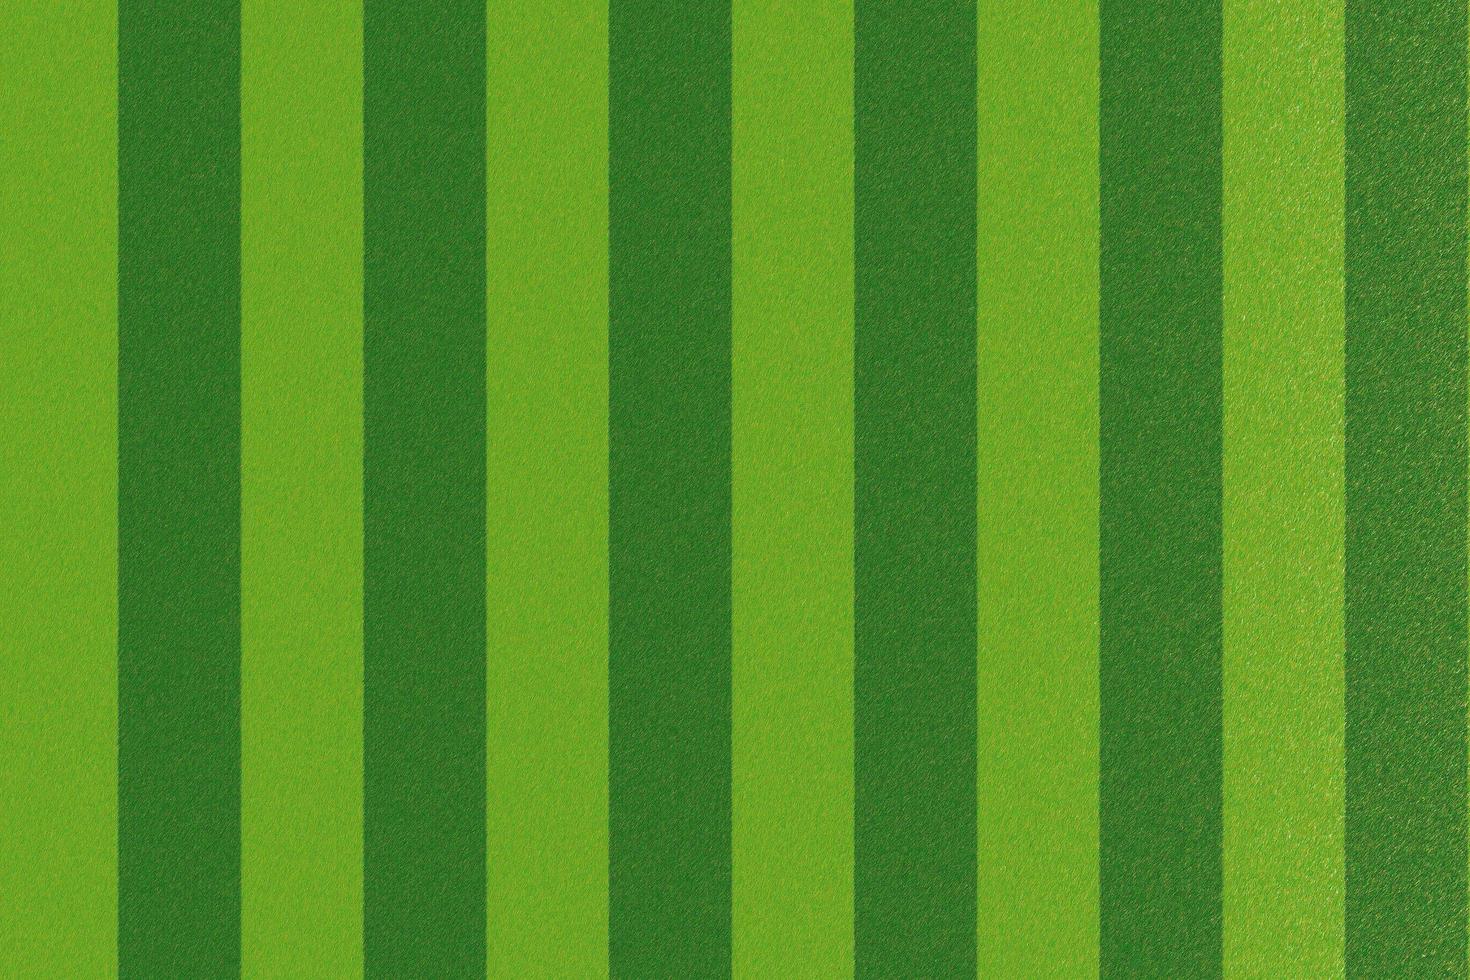 trama di flanella verde o tessuto da campo da calcio, sfondo astratto foto